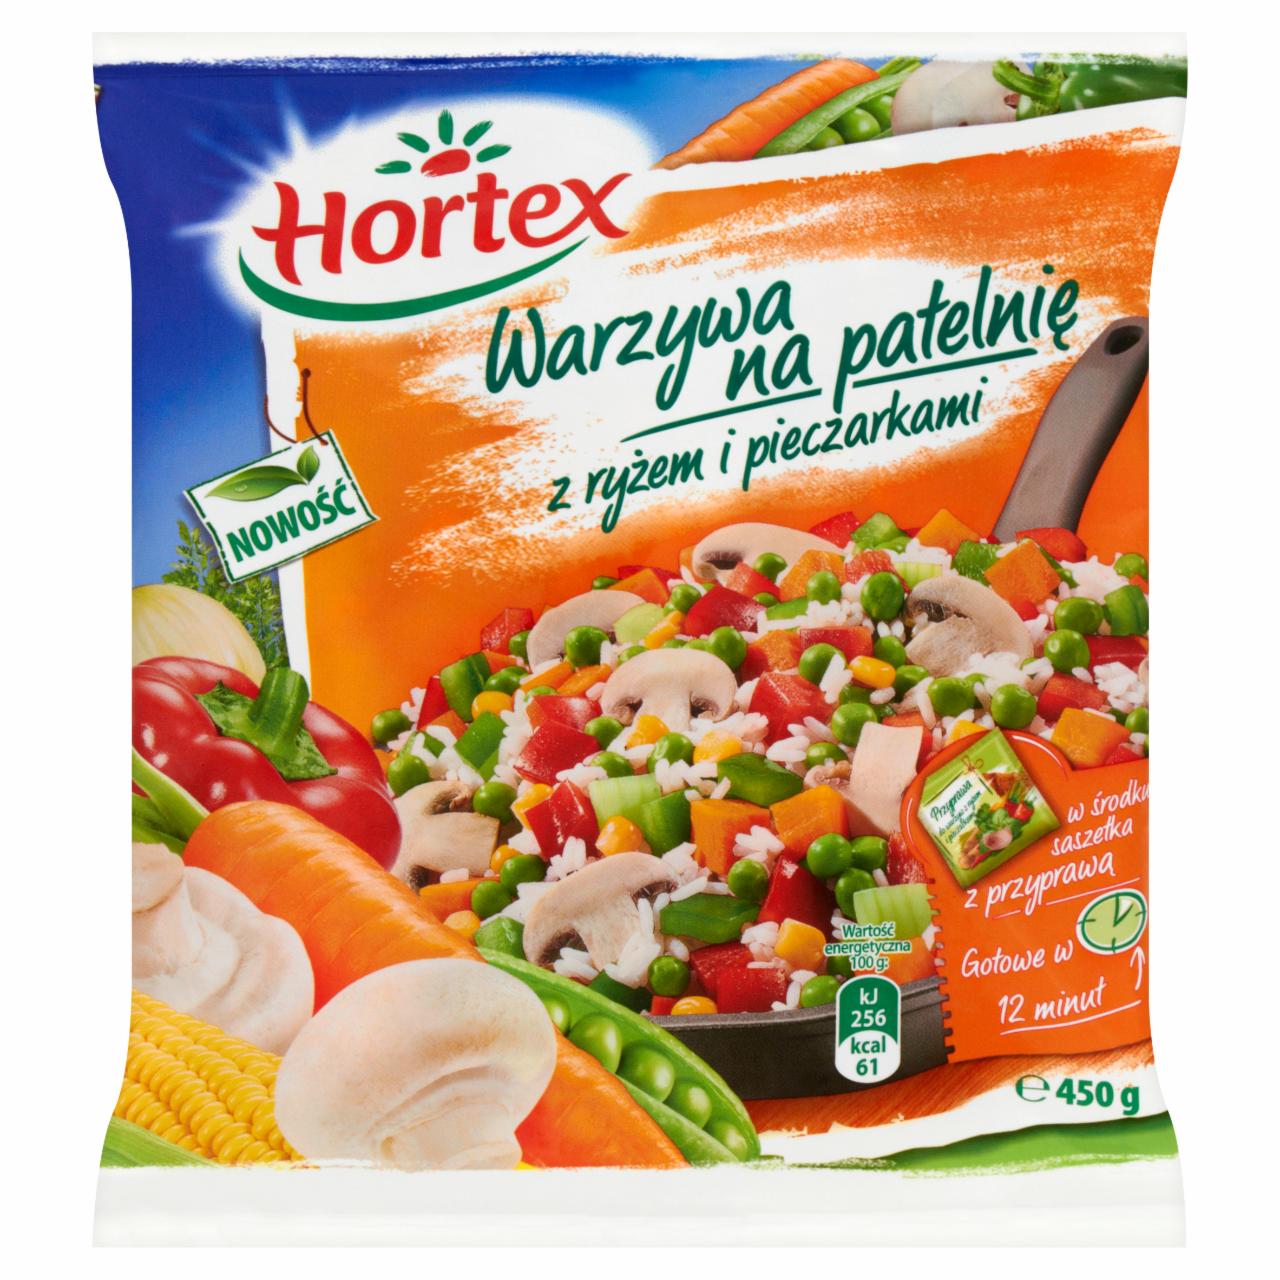 Zdjęcia - Warzywa na patelnię z ryżem i pieczarkami Hortex